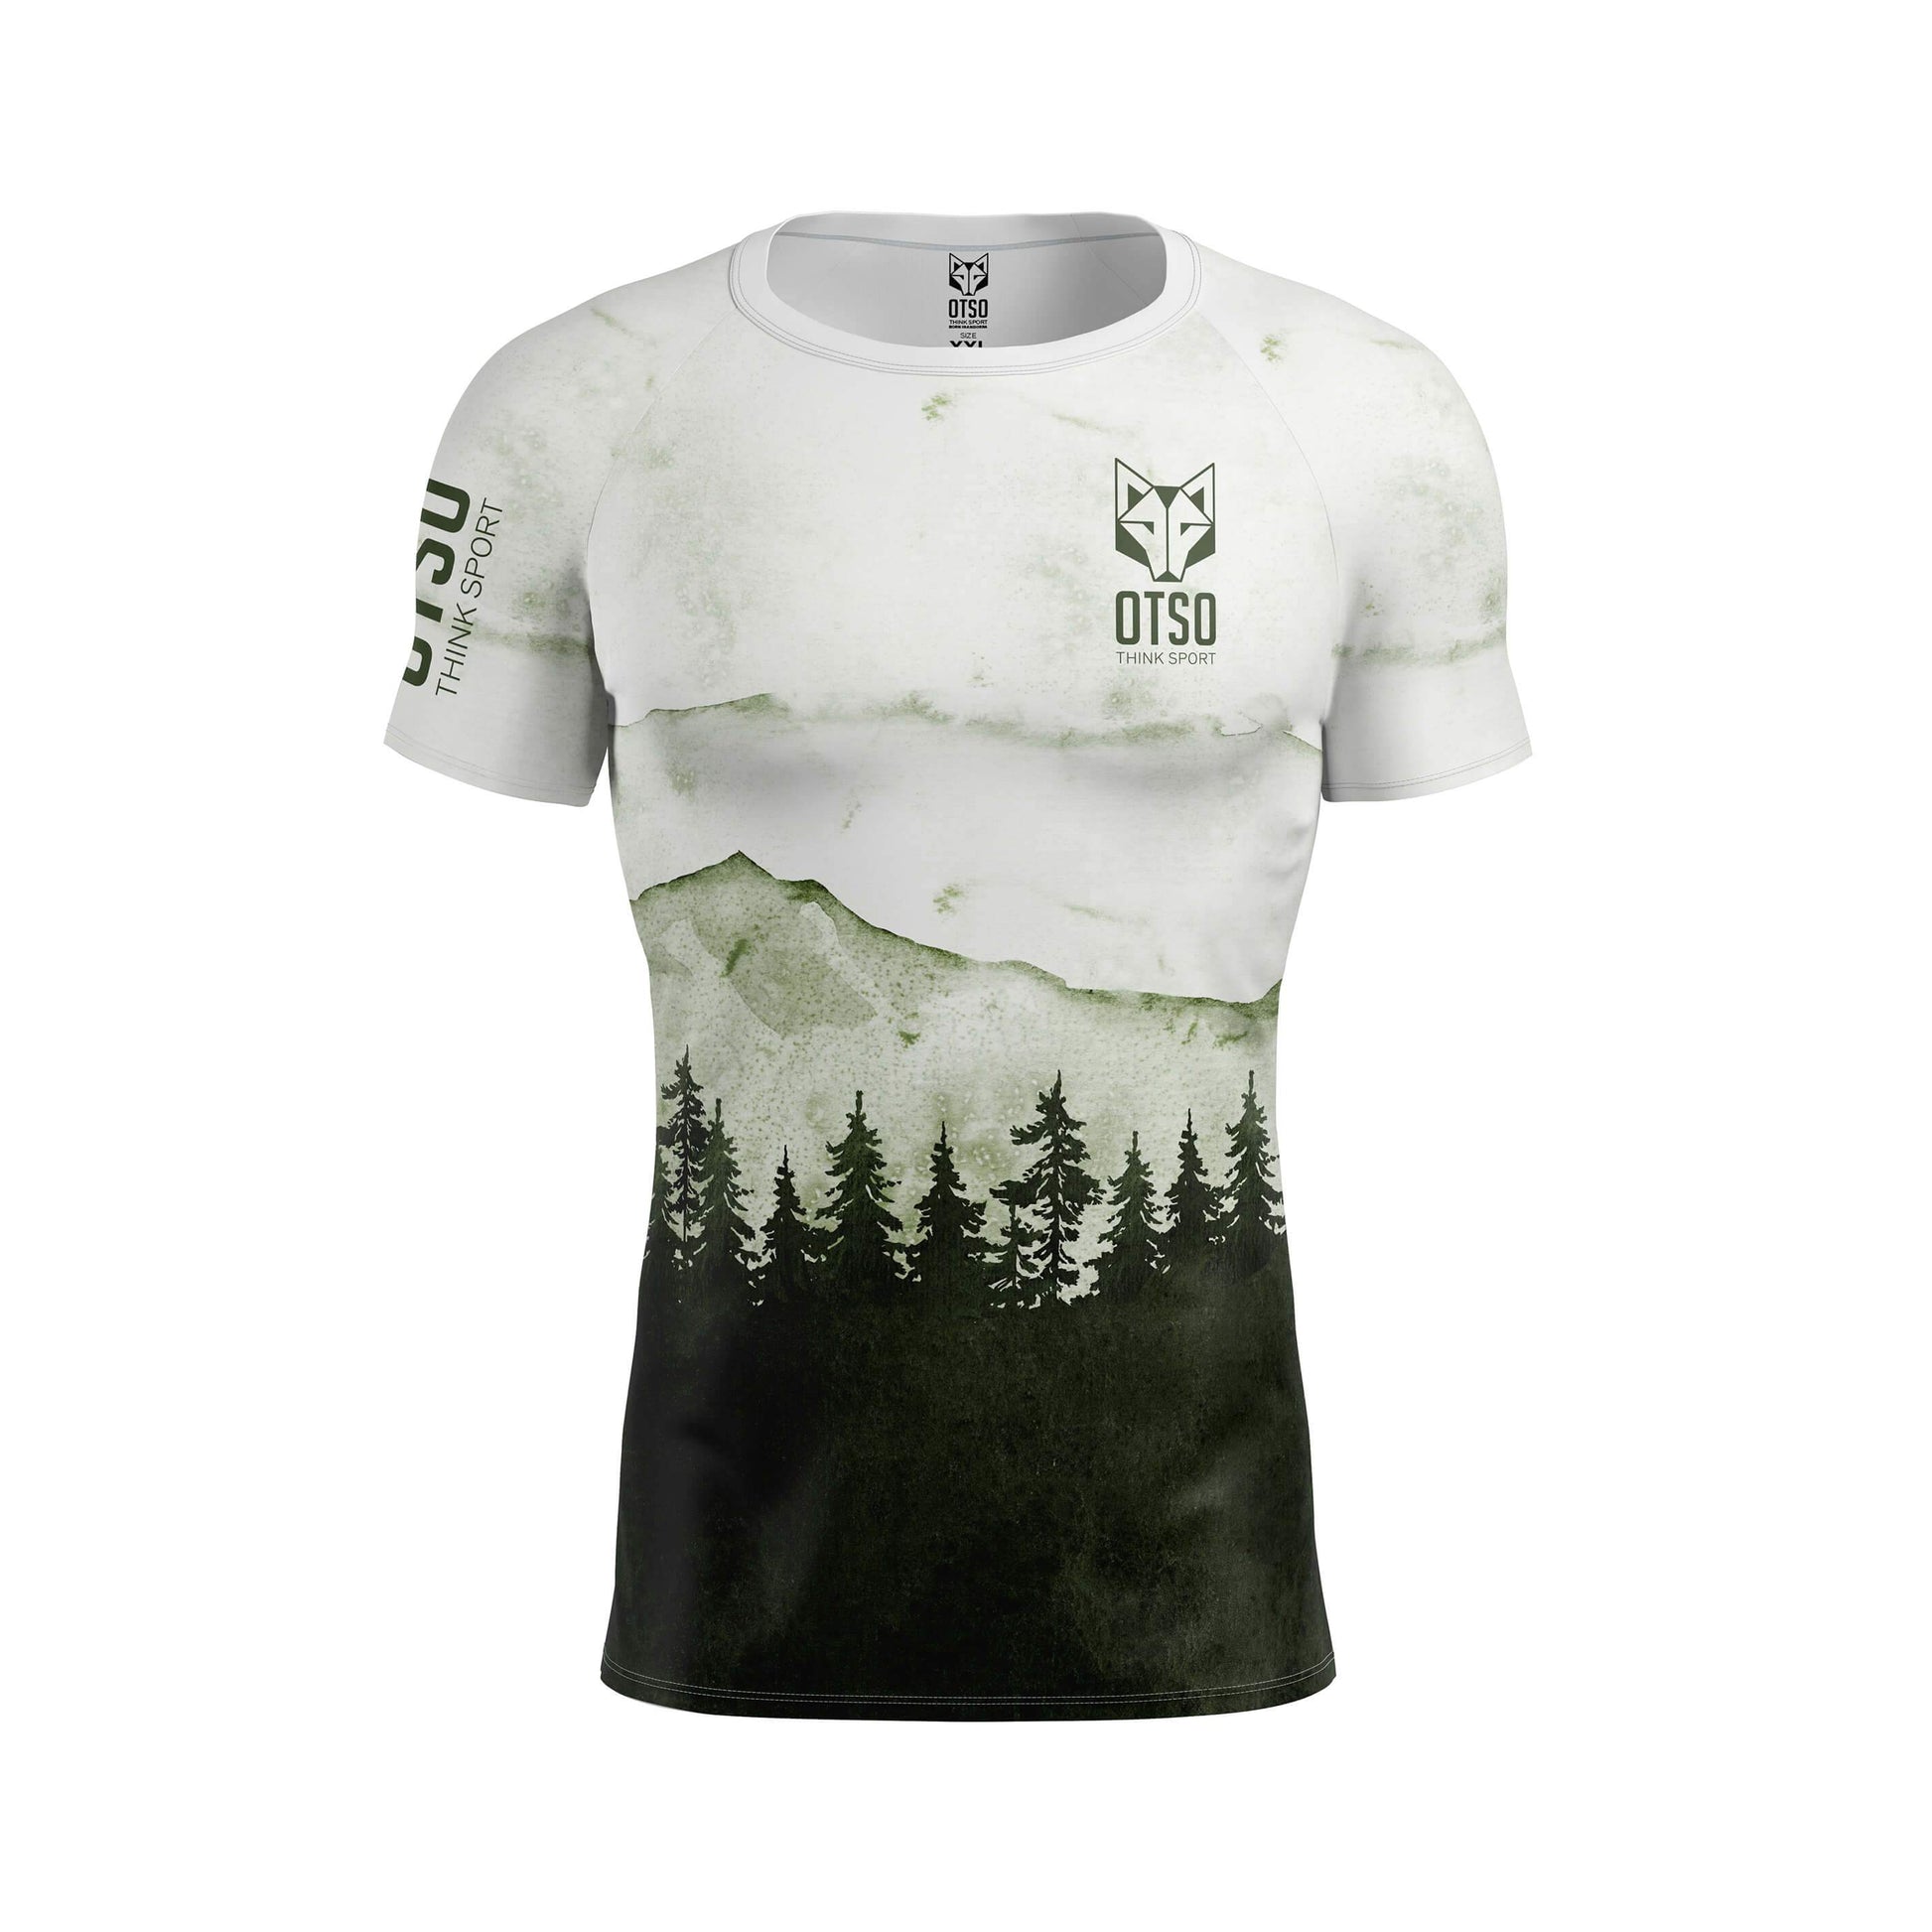 Camiseta de manga corta para hombre de la marca Otso con estampado Green Forest. Foto delantera